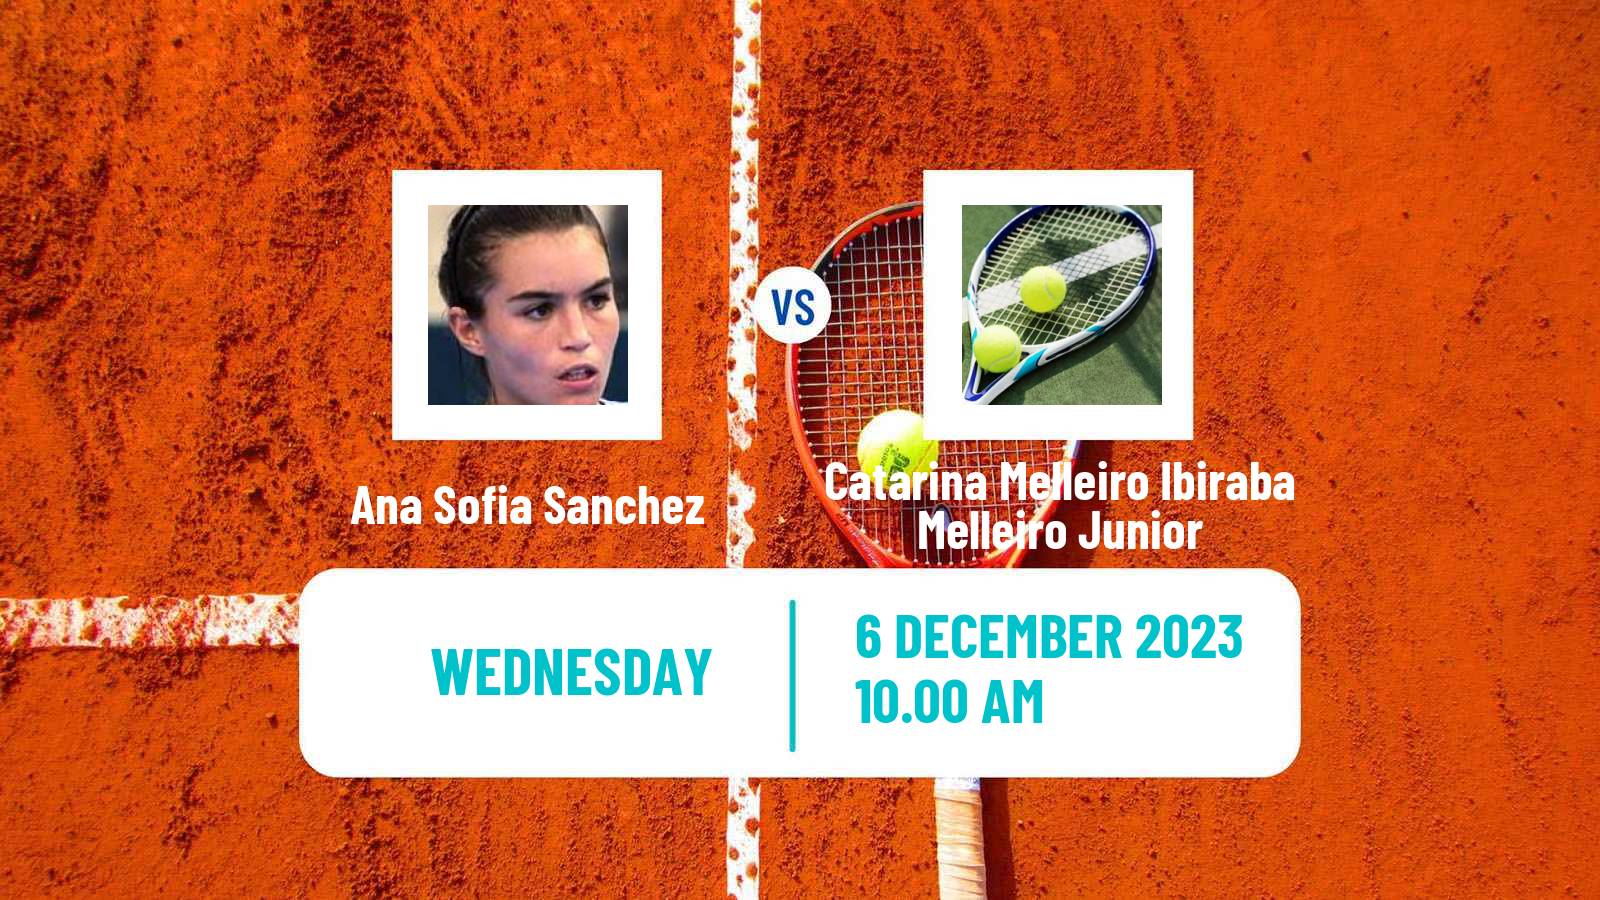 Tennis ITF W25 Mogi Das Cruzes Women Ana Sofia Sanchez - Catarina Melleiro Ibiraba Melleiro Junior